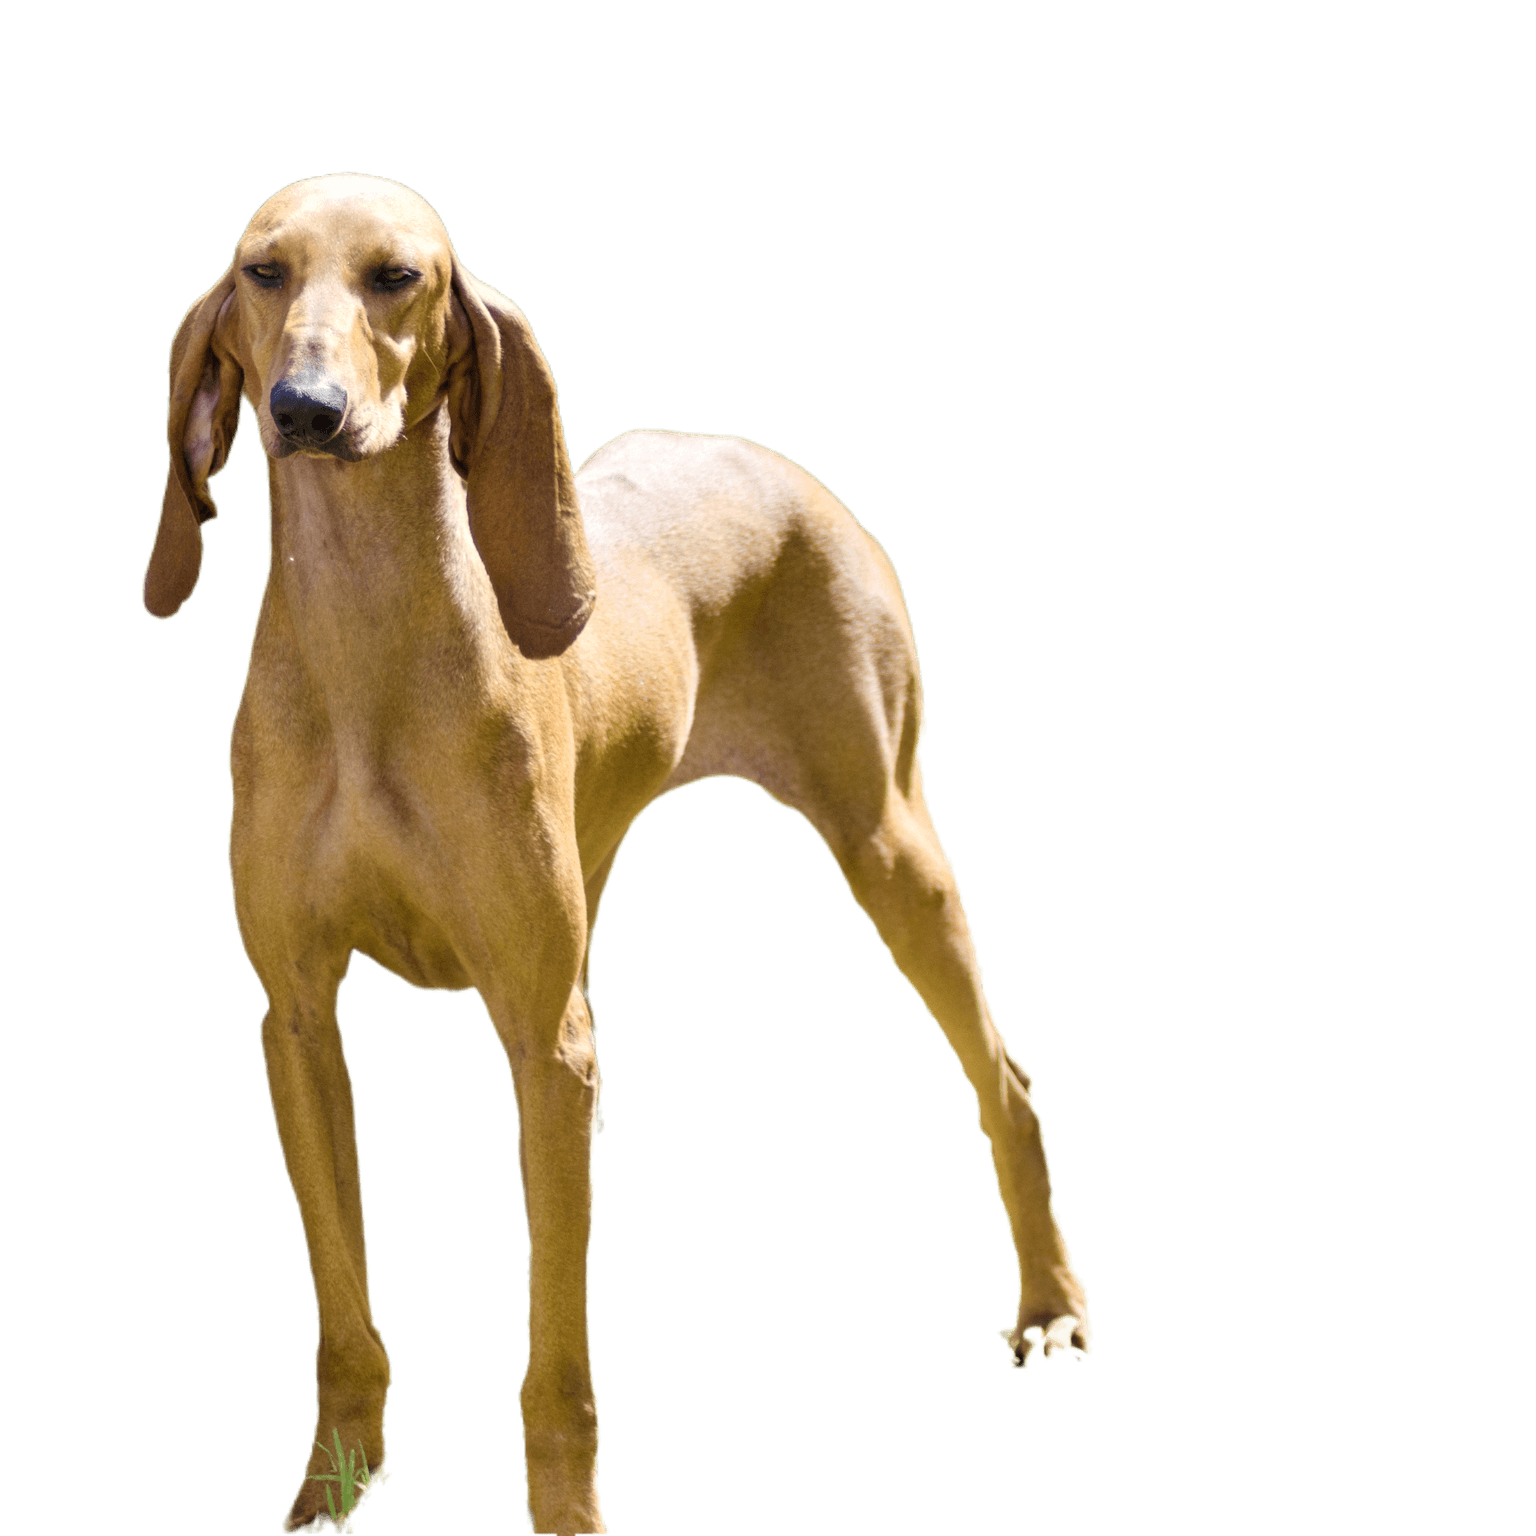 Un jeune et magnifique Segugio Italiano au pelage de biche et aux poils lisses se tient vigilant dans l'herbe. Le chien de chasse italien a une longue tête et de longues oreilles et est utilisé comme chien de chasse.